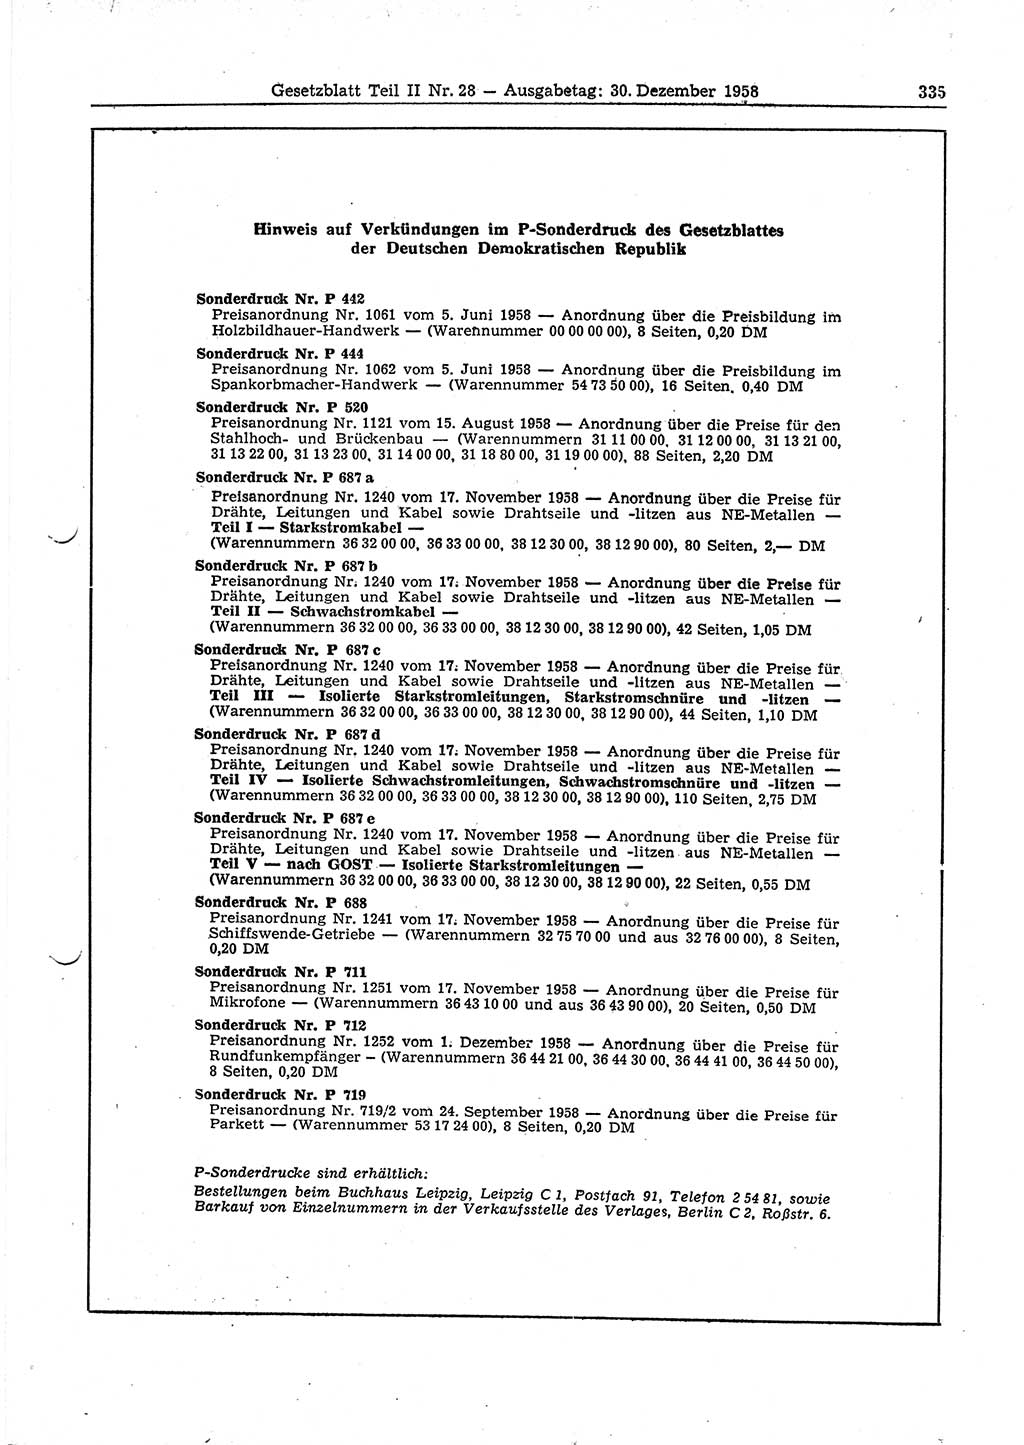 Gesetzblatt (GBl.) der Deutschen Demokratischen Republik (DDR) Teil ⅠⅠ 1958, Seite 335 (GBl. DDR ⅠⅠ 1958, S. 335)